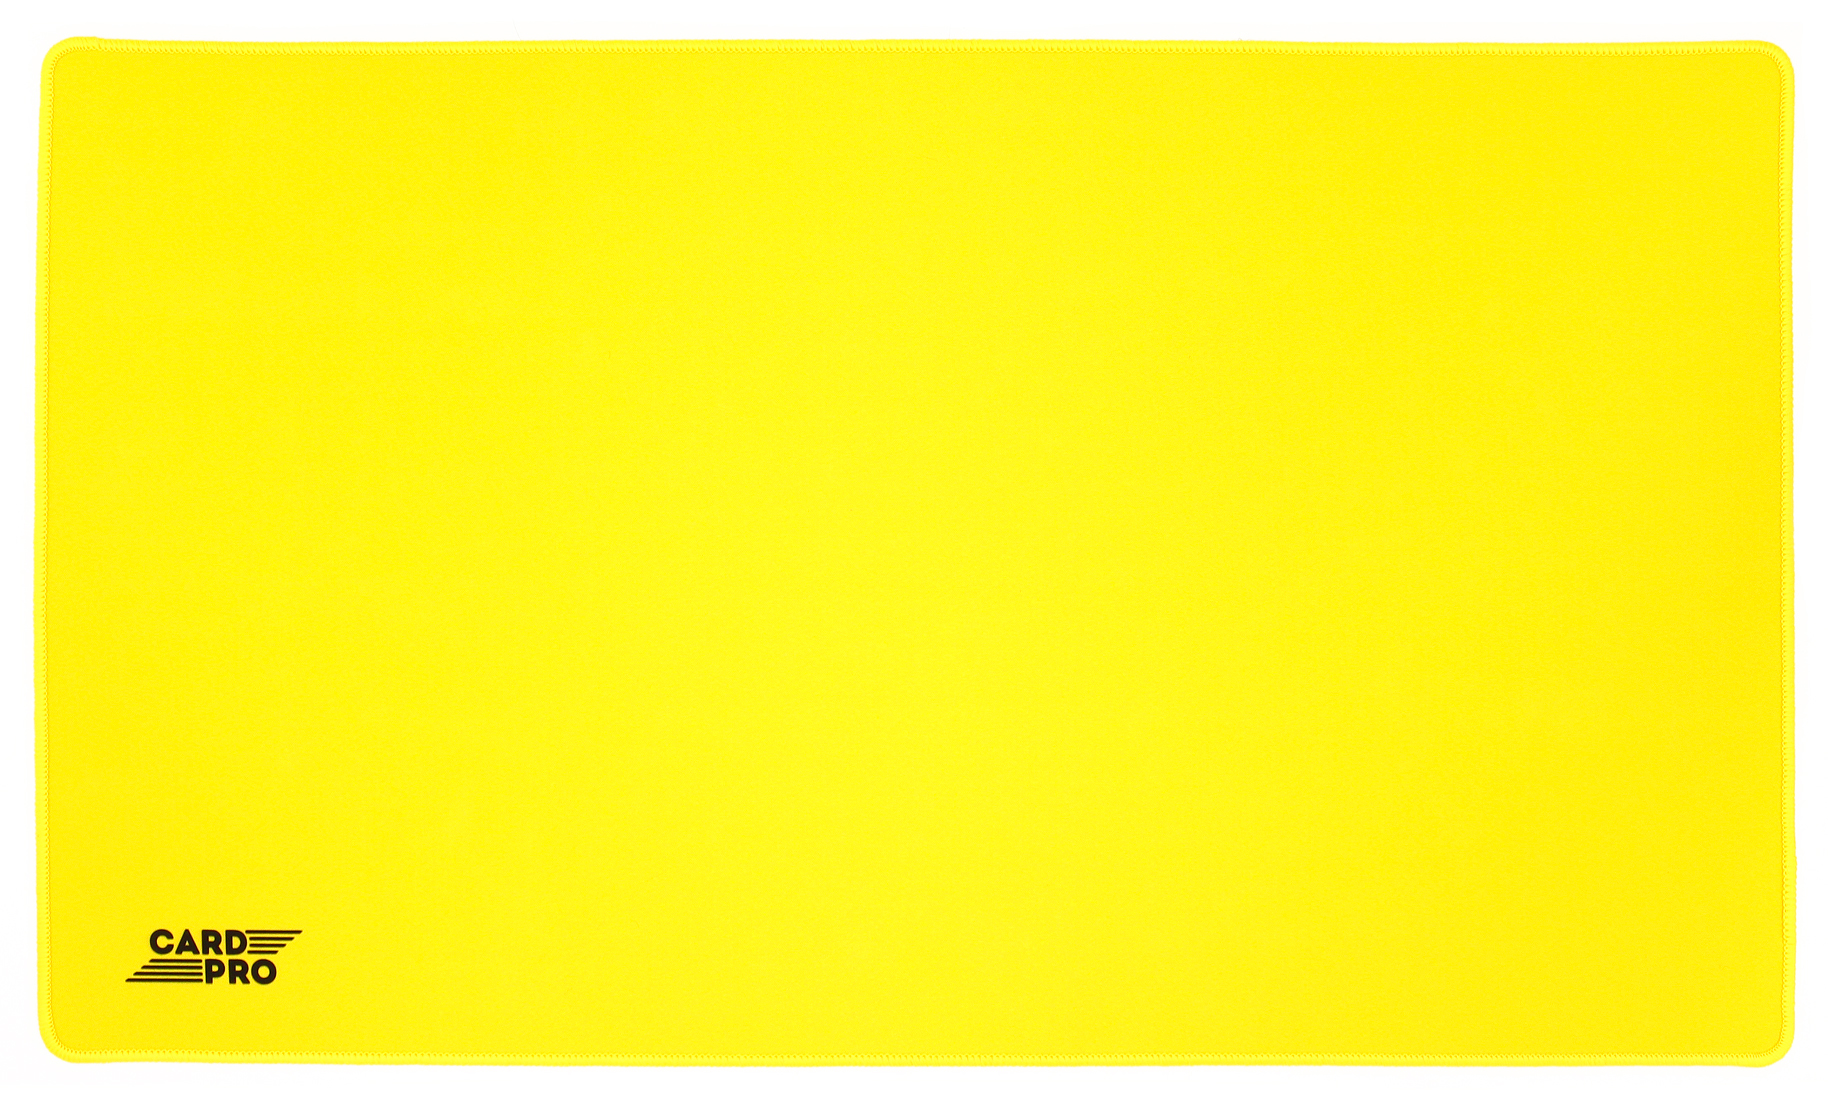 Игровой коврик Card-Pro Желтый 274723 игровой коврик для мыши mad catz g l i d e 21 чёрный 430 x 370 x 1 8 мм силикон водоотталкивающая ткань